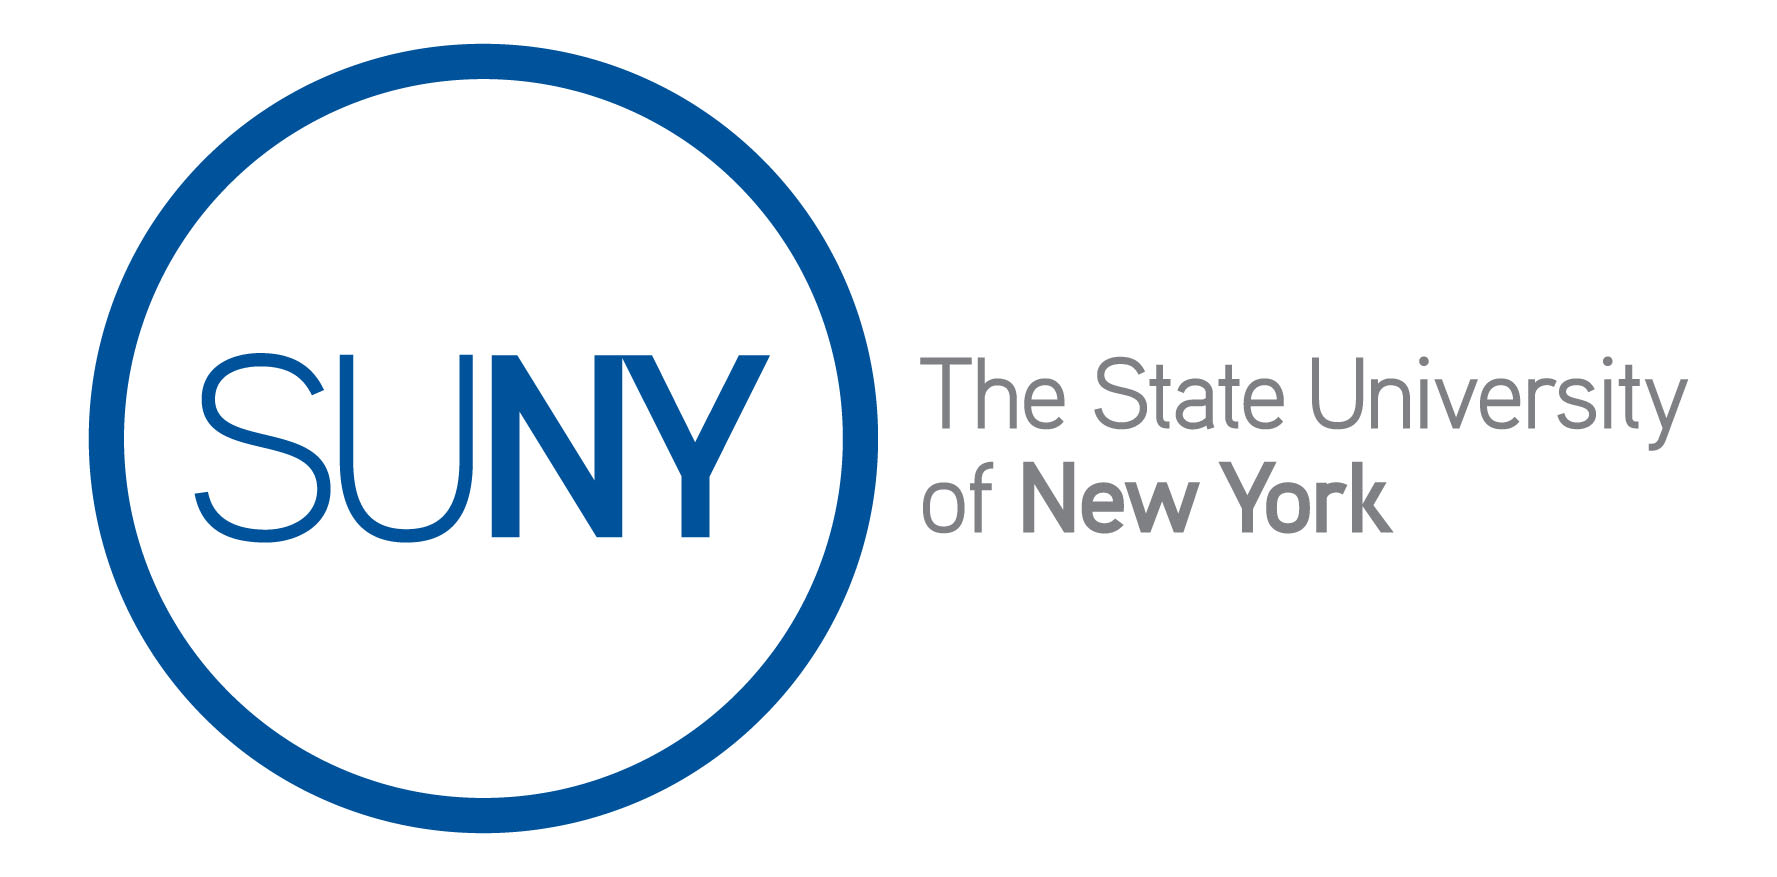 Brandmark of The State University of New York